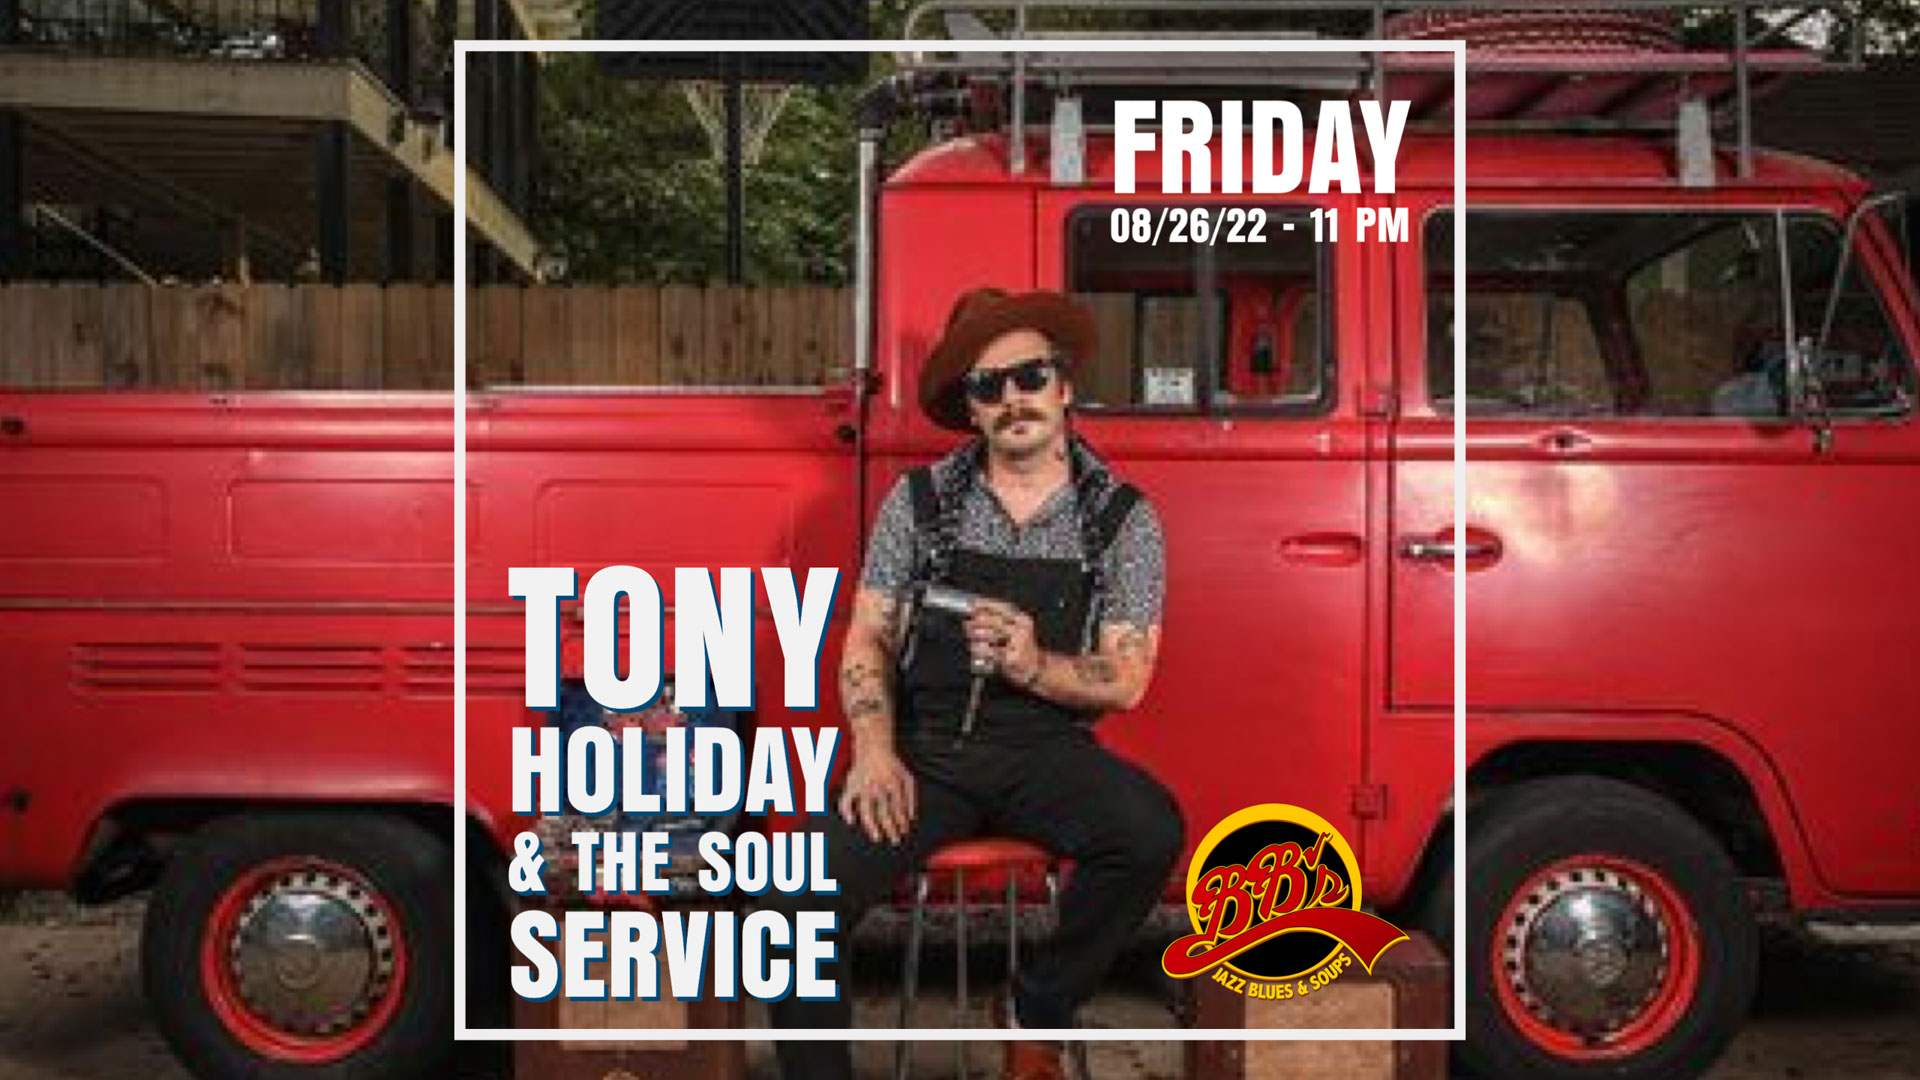 Tony Holiday & The Soul Service